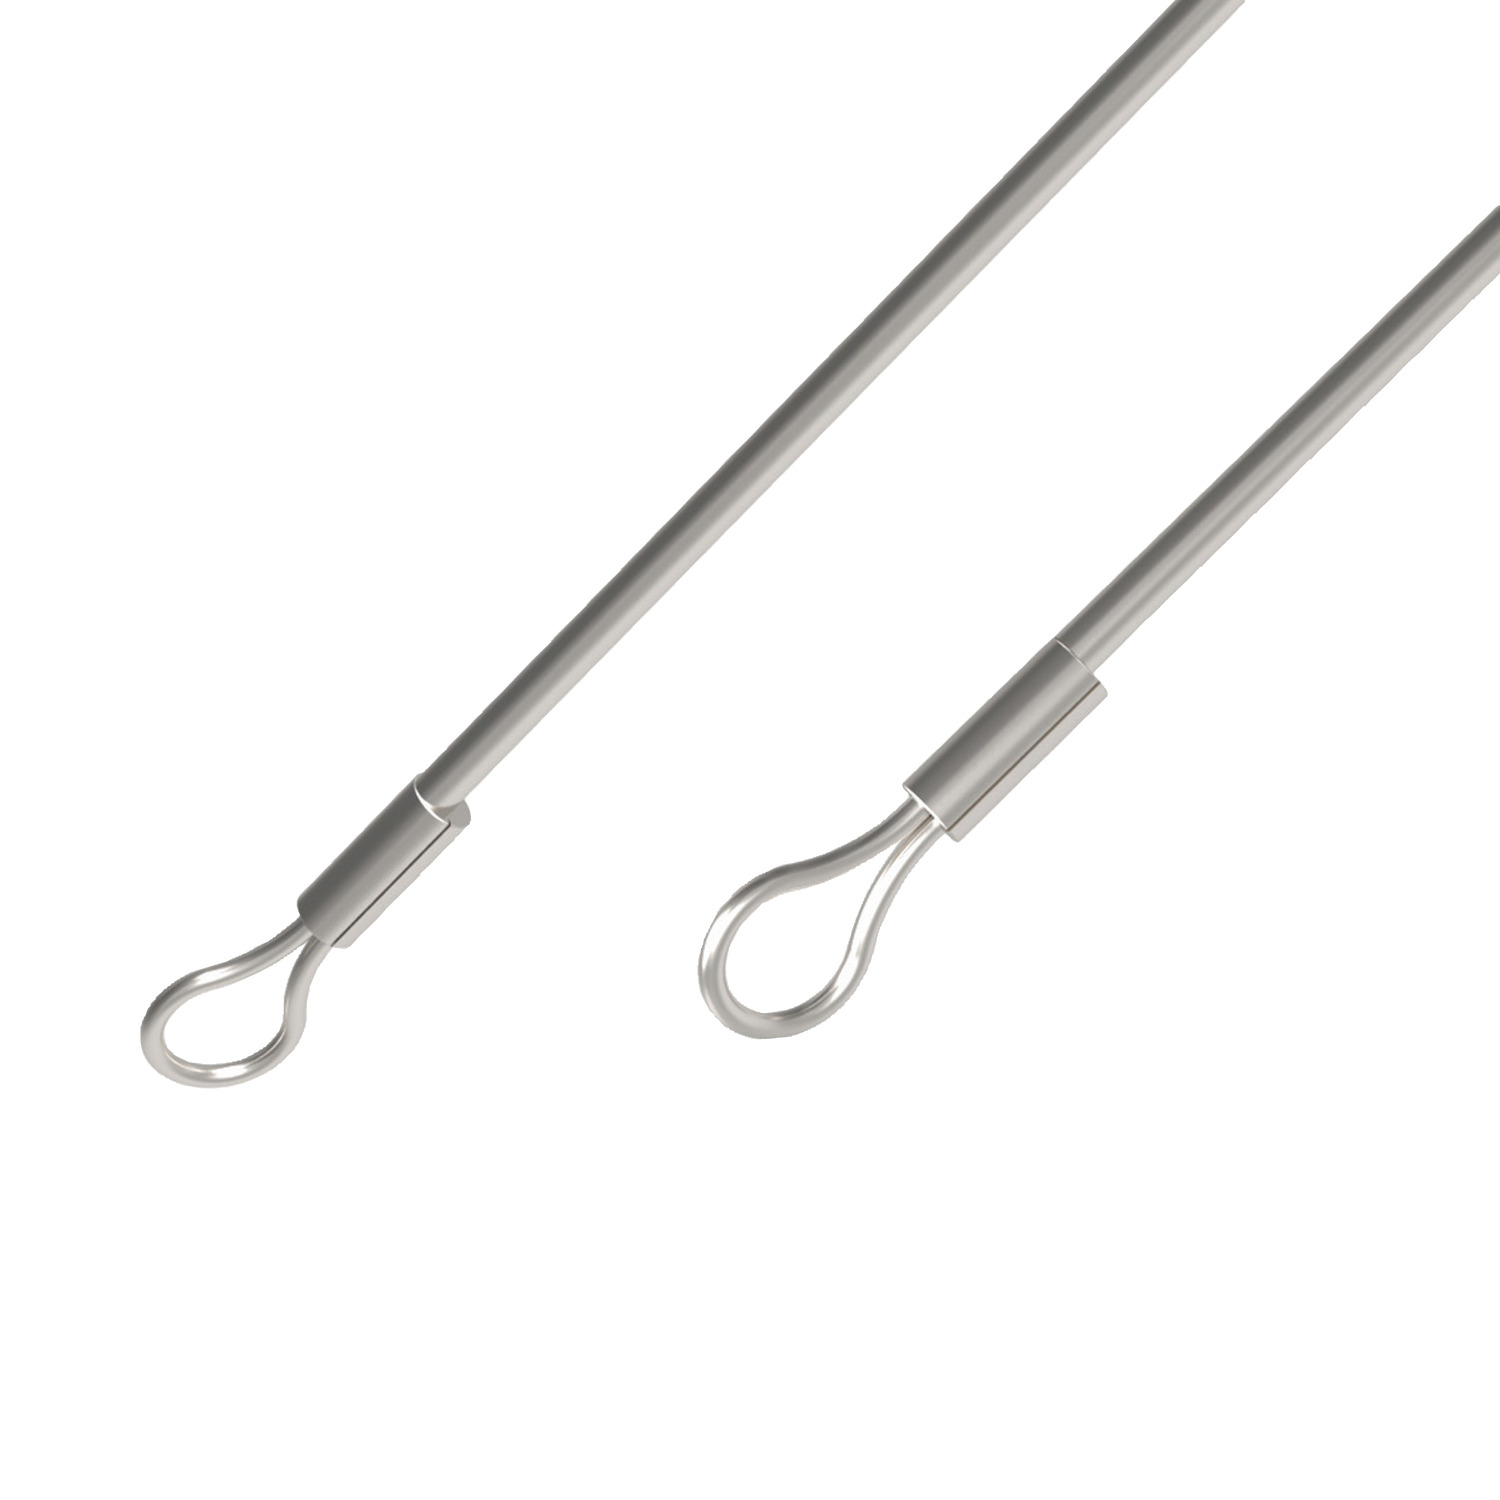 Product P1255, Lanyard - Loop to Loop crimps stainless steel / 